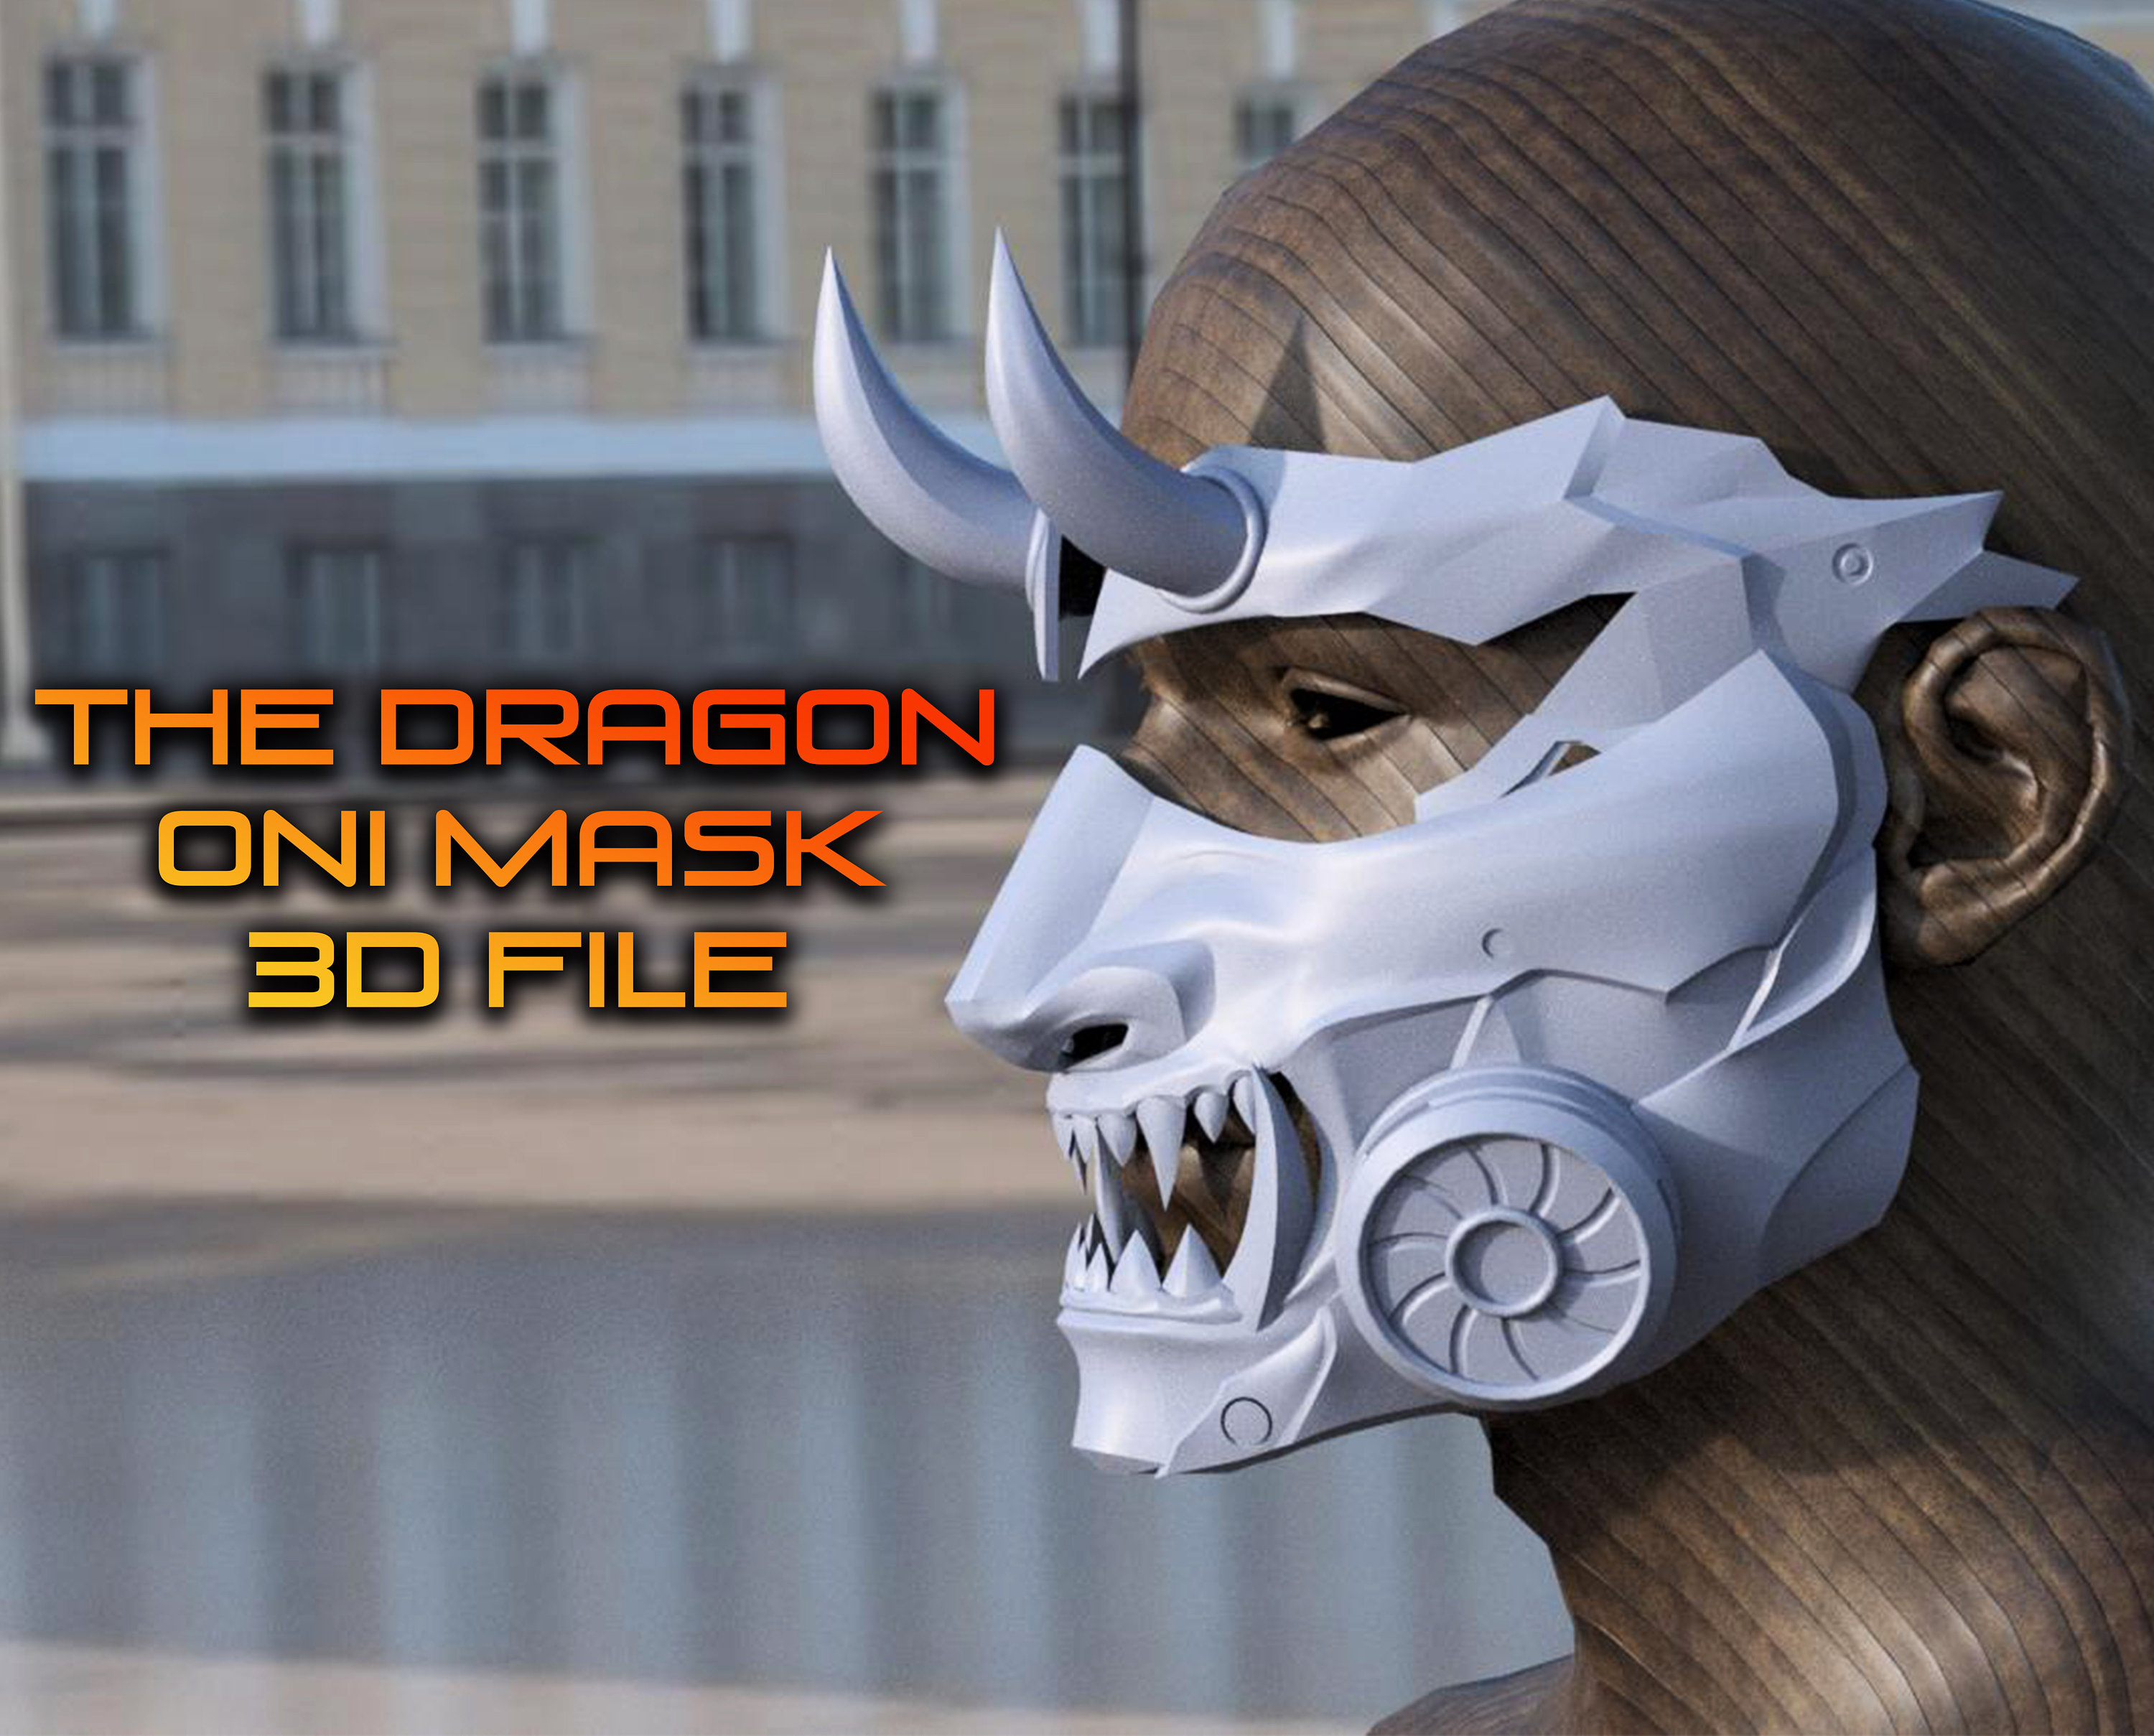 Imprimir en 3D Máscara facial - Media máscara de Samurai - Disfraz de  Halloween Cosplay • Hecho con una impresora 3D Anycubic・Cults